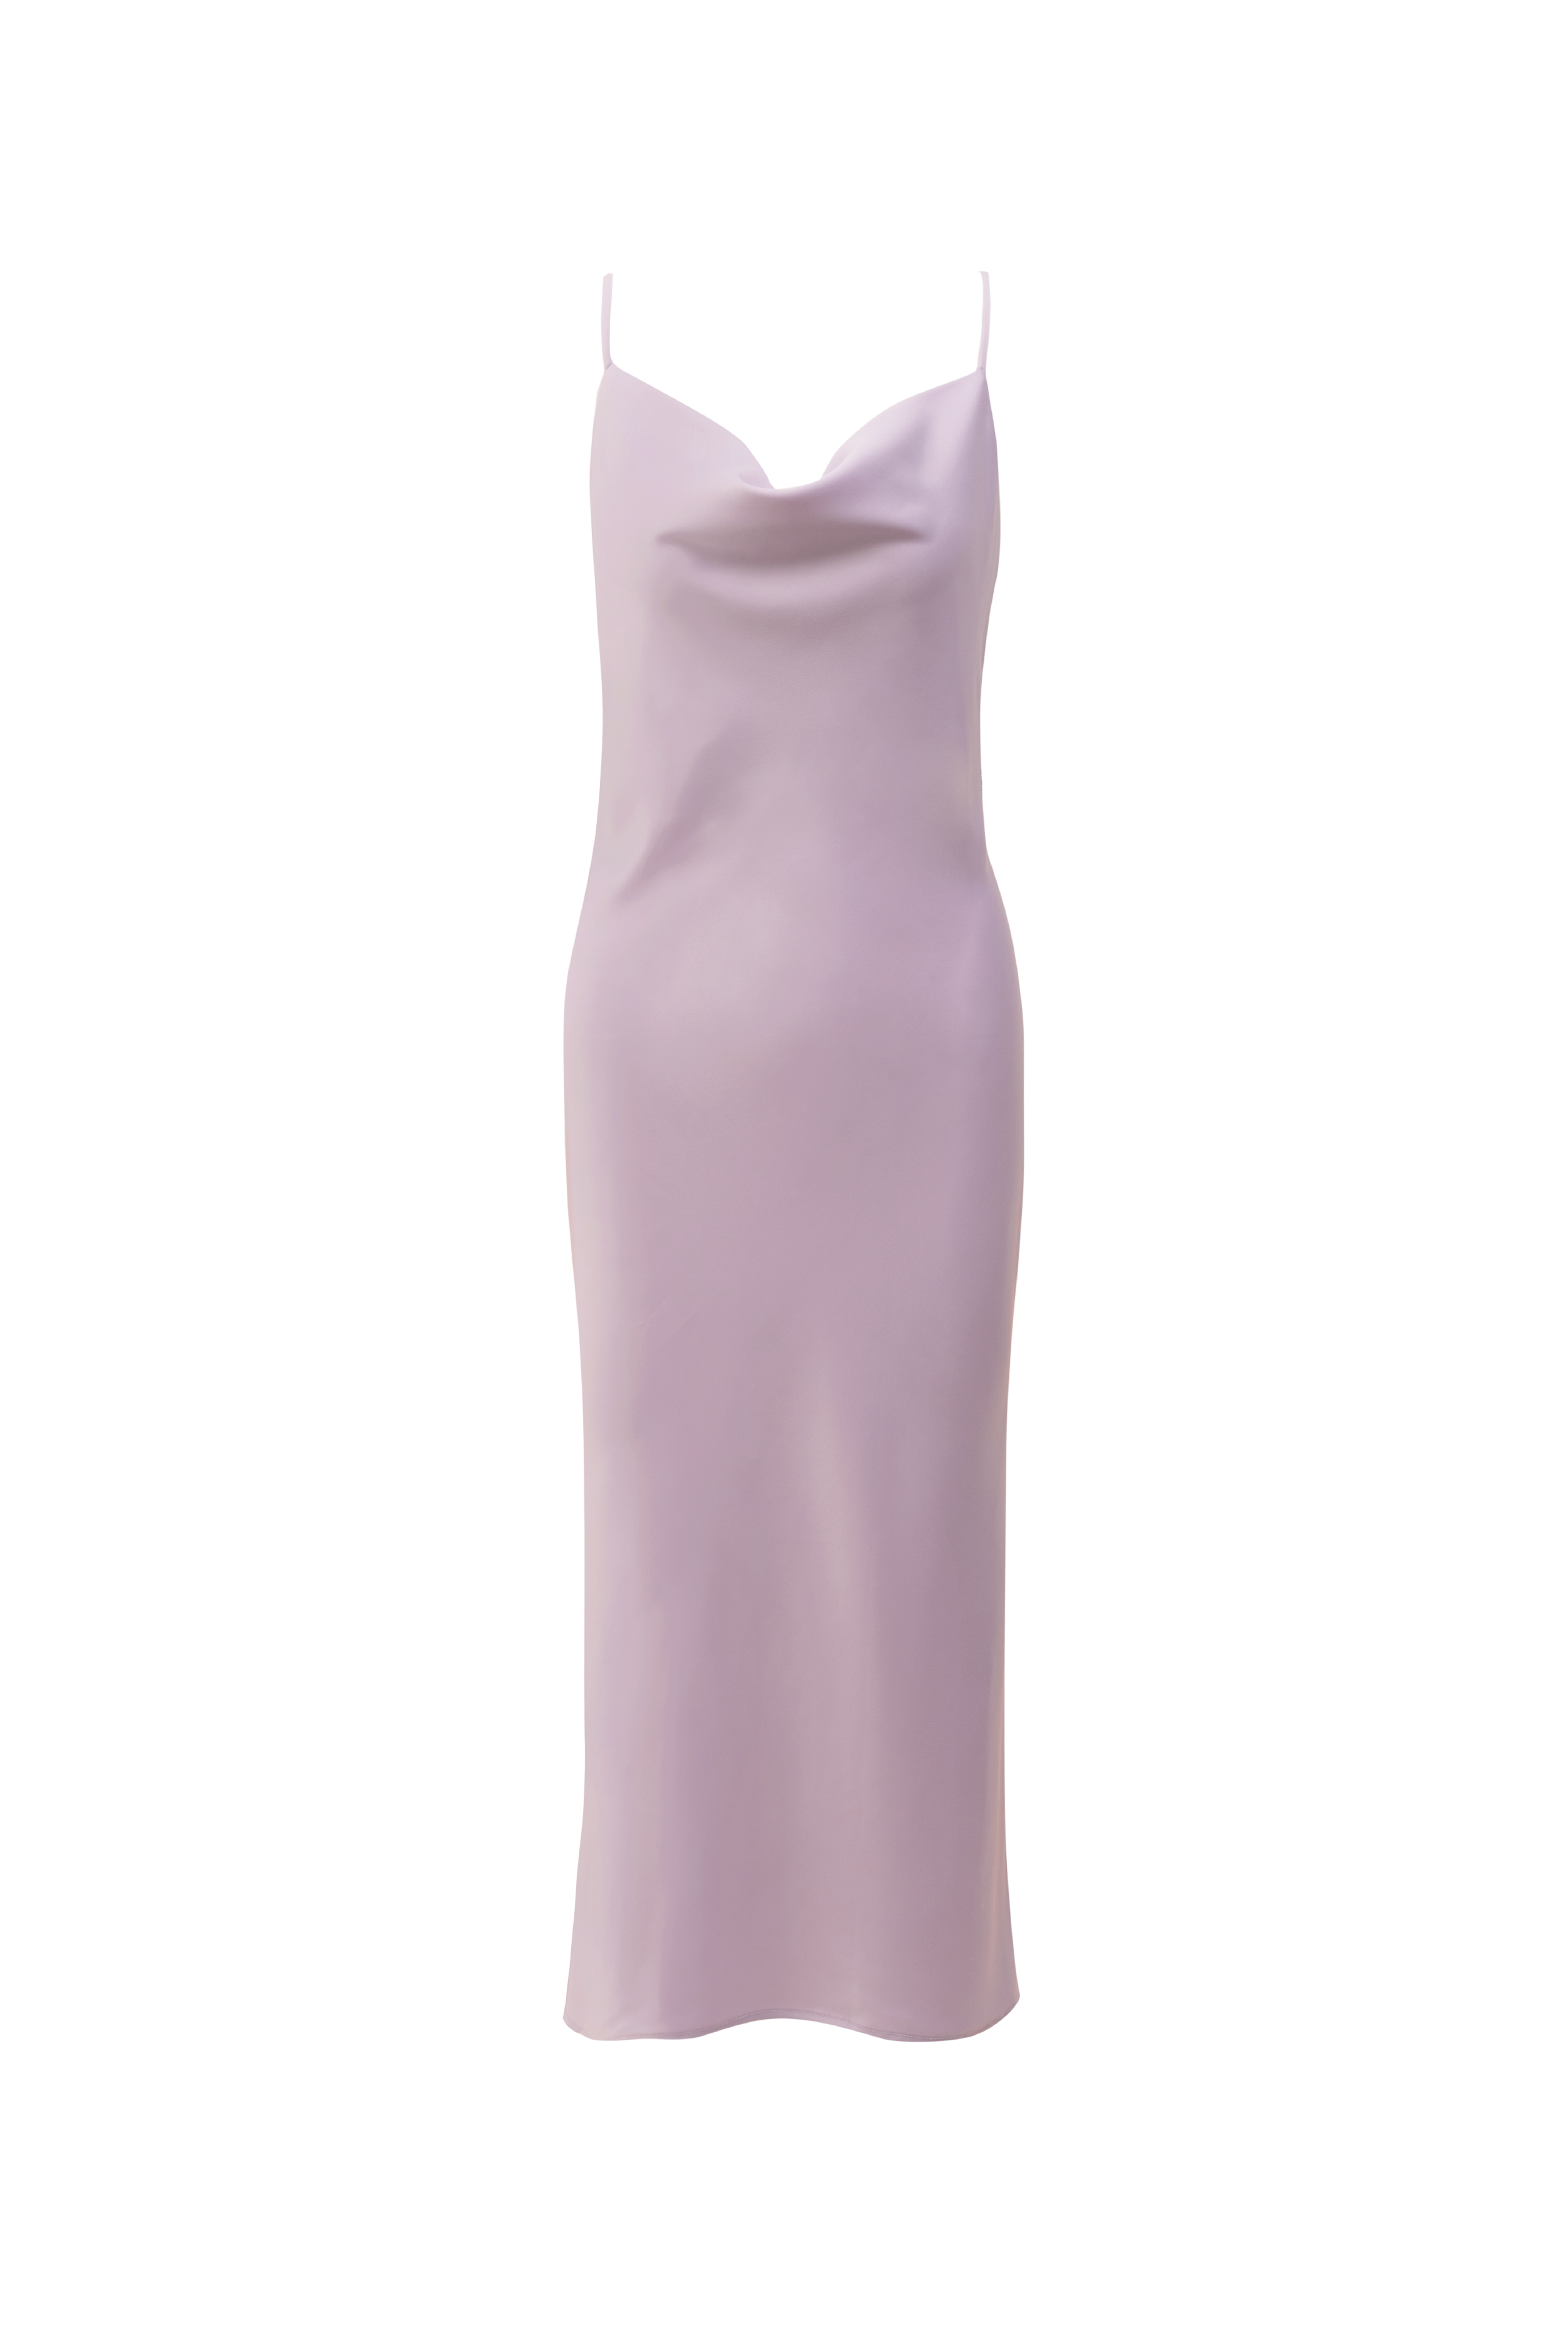 PAIGE 連身裙 - 淡紫色